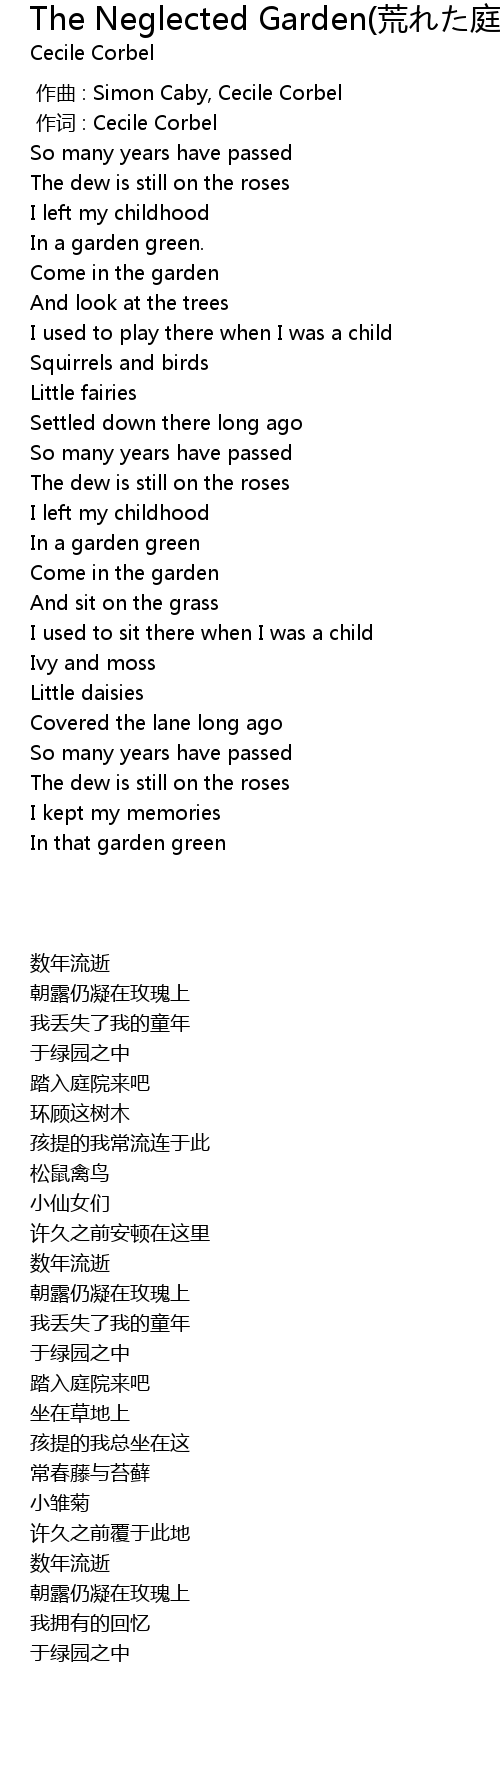 The Neglected Garden 荒れた庭 The Neglected Garden Huang Ting Lyrics Follow Lyrics